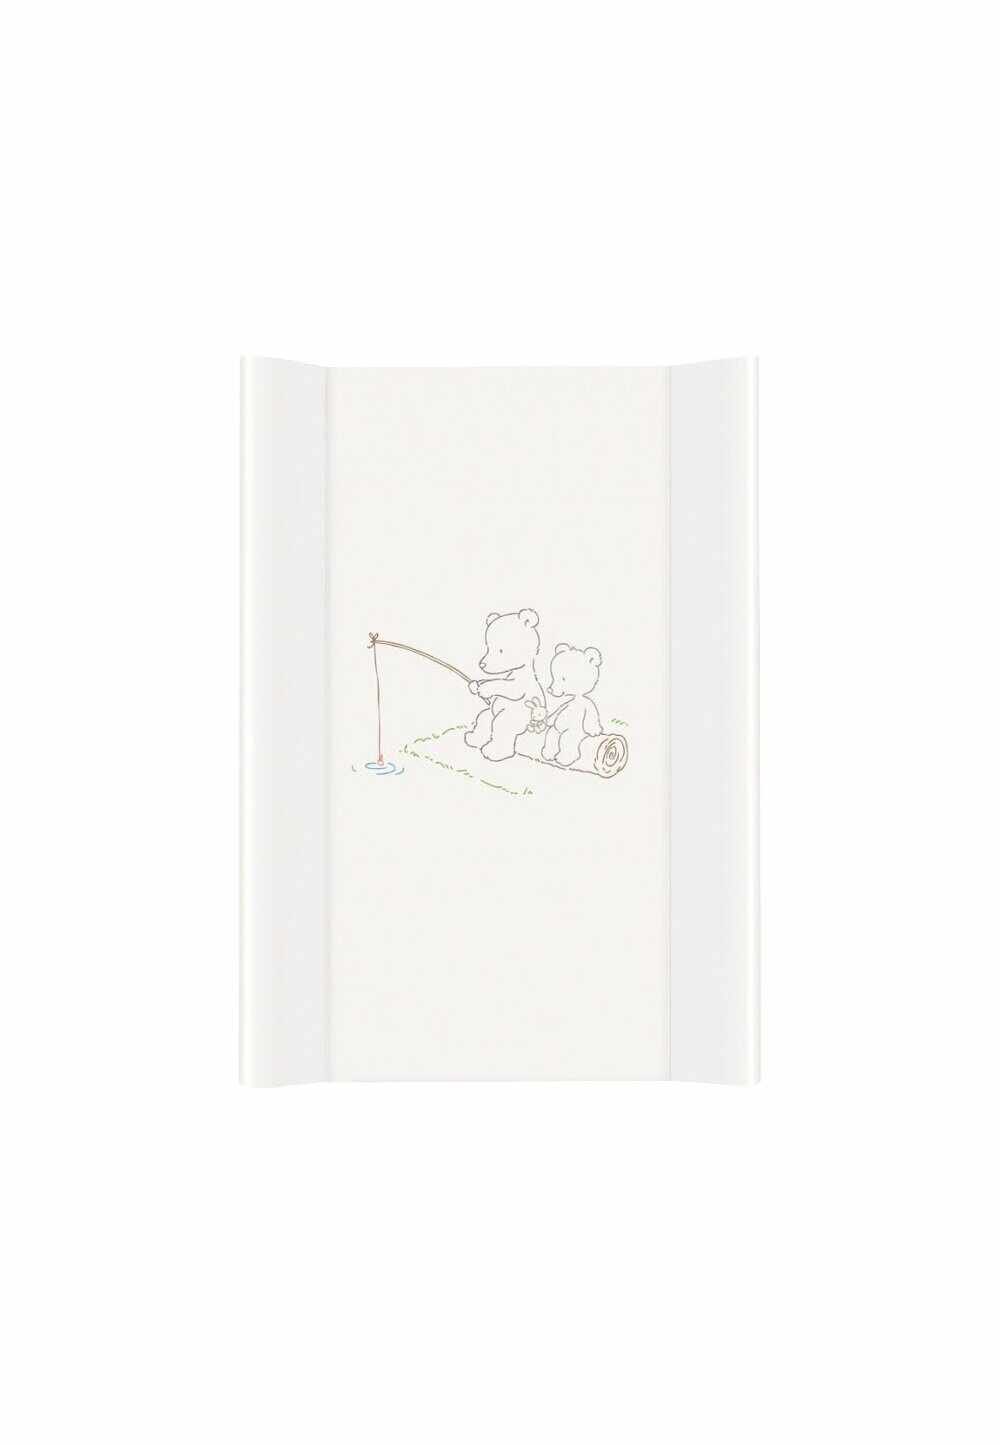 Saltea de infasat cu intaritura, Papa bear, alba, 70 x 50 cm